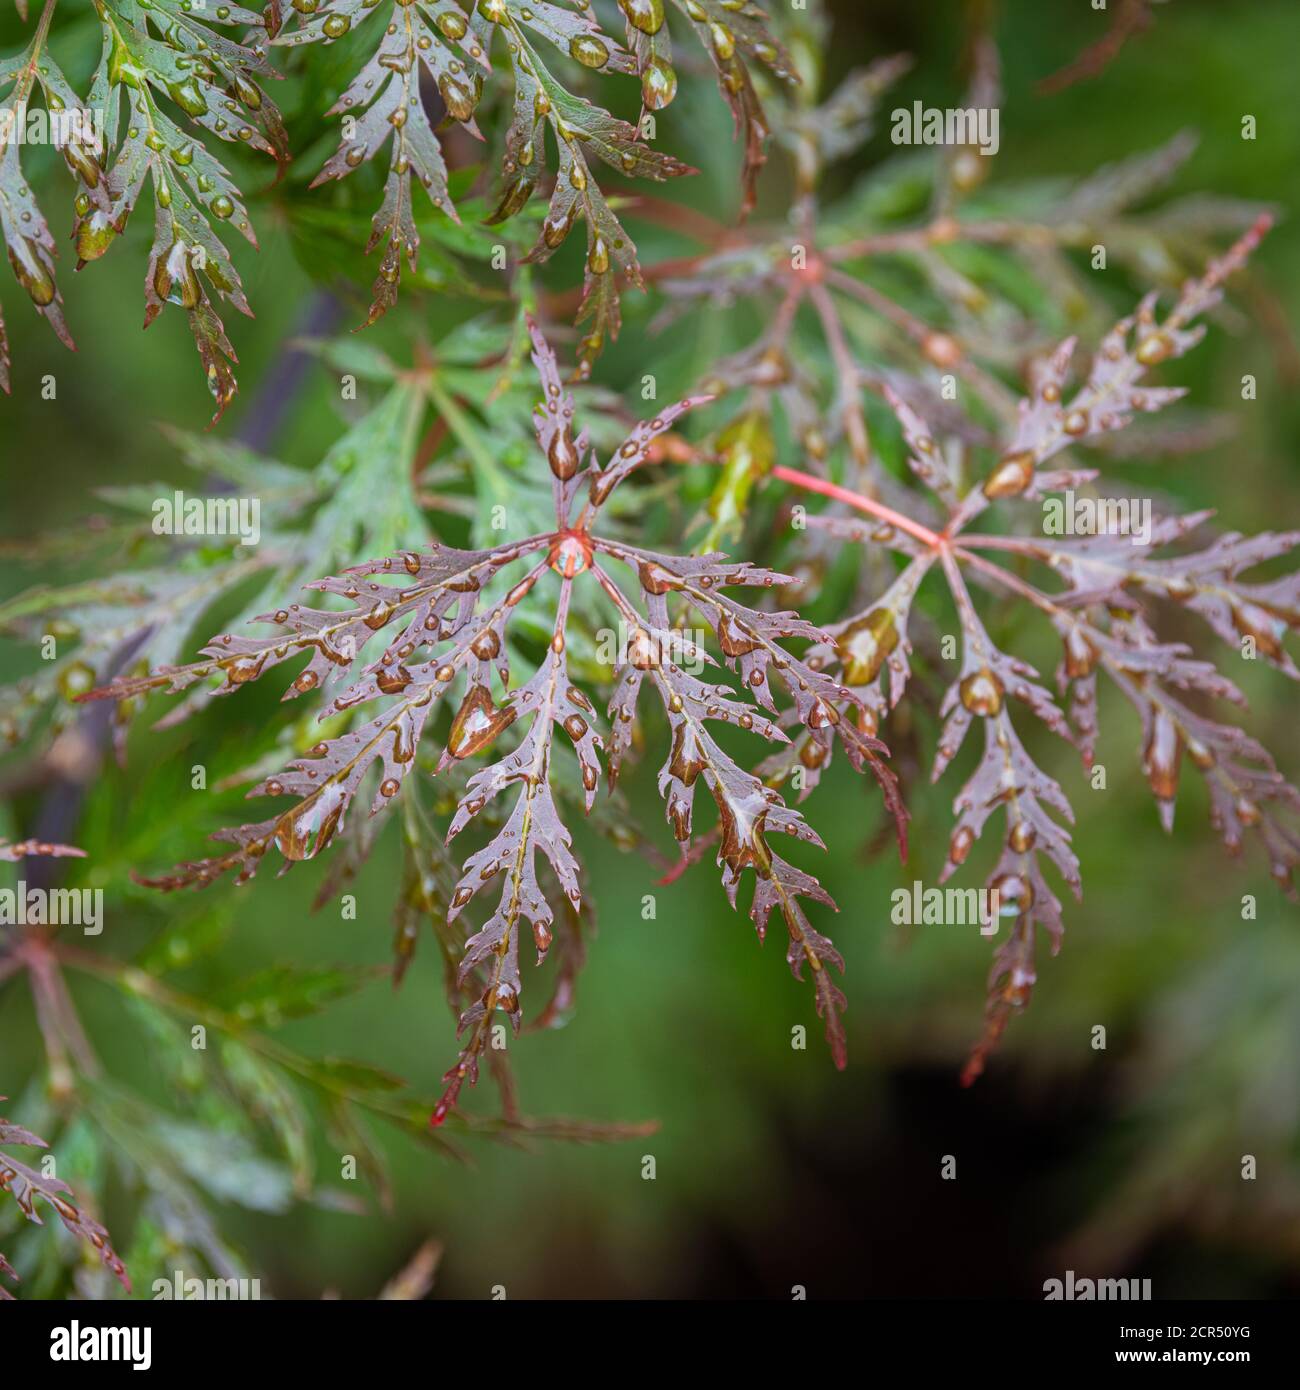 Acer palmatum Dissectum Orangeola in summer rain Stock Photo